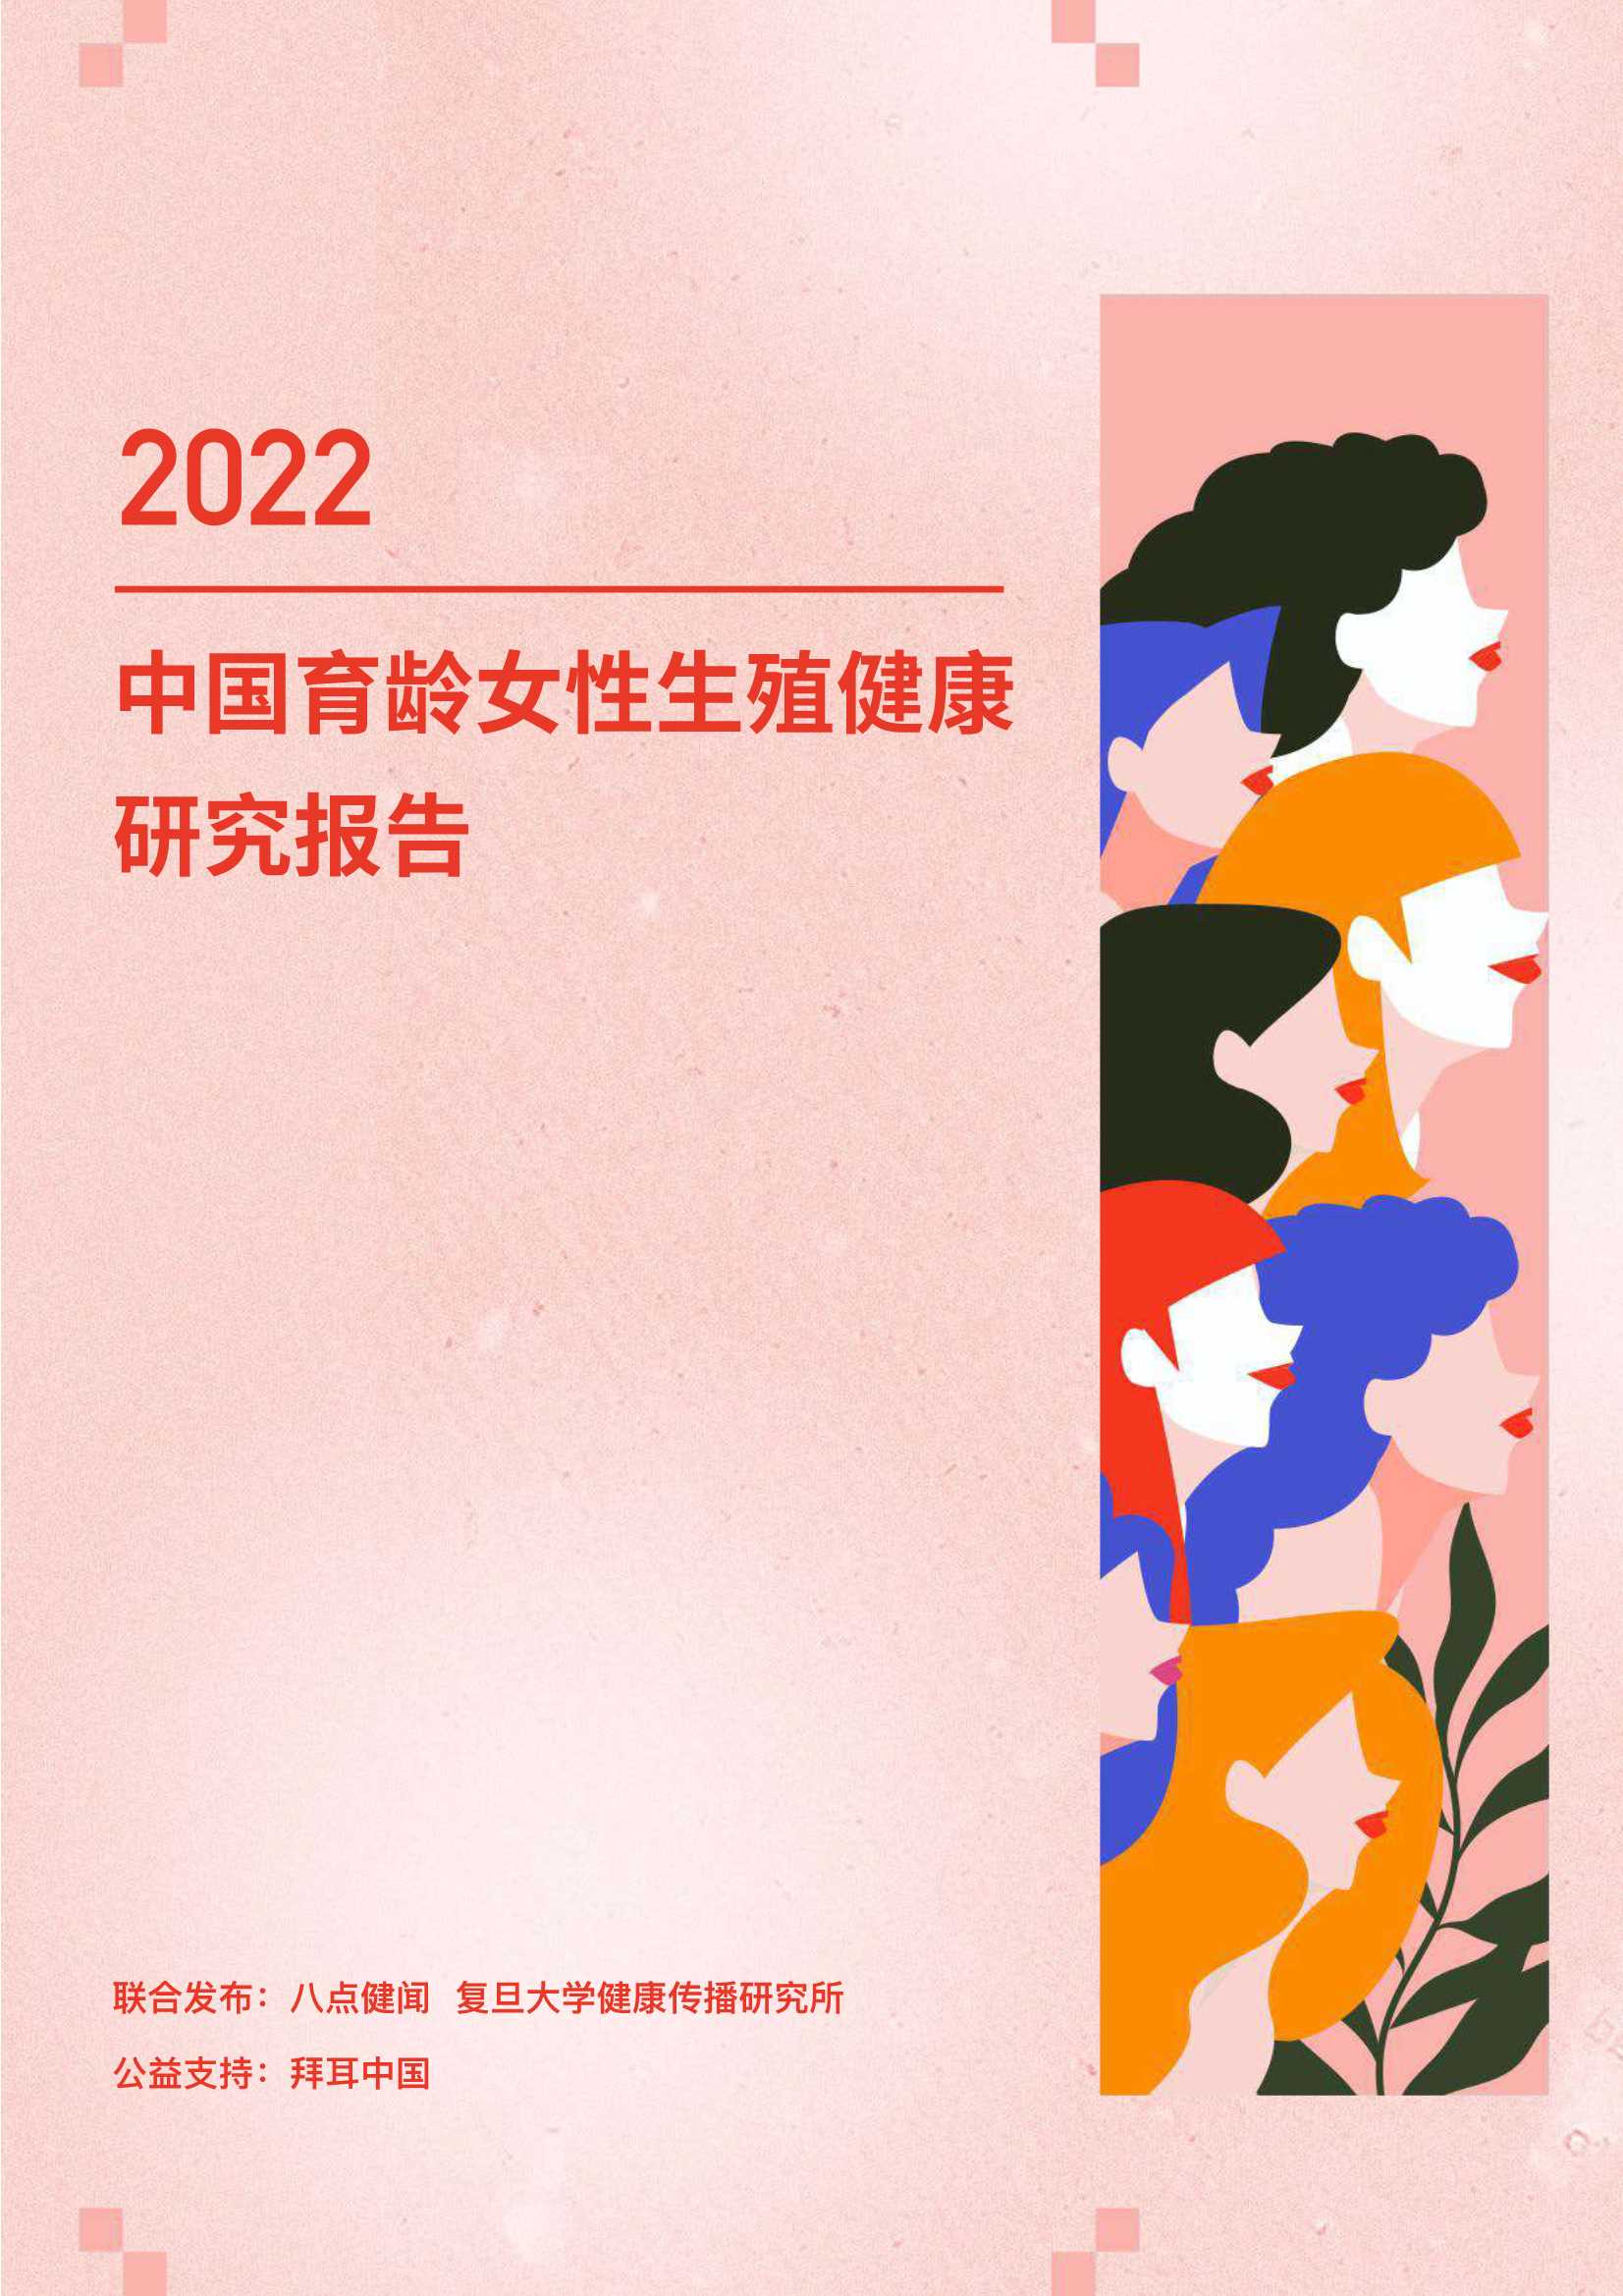 八点健闻-2022年中国育龄女性生殖健康研究报告-2022.03-52页